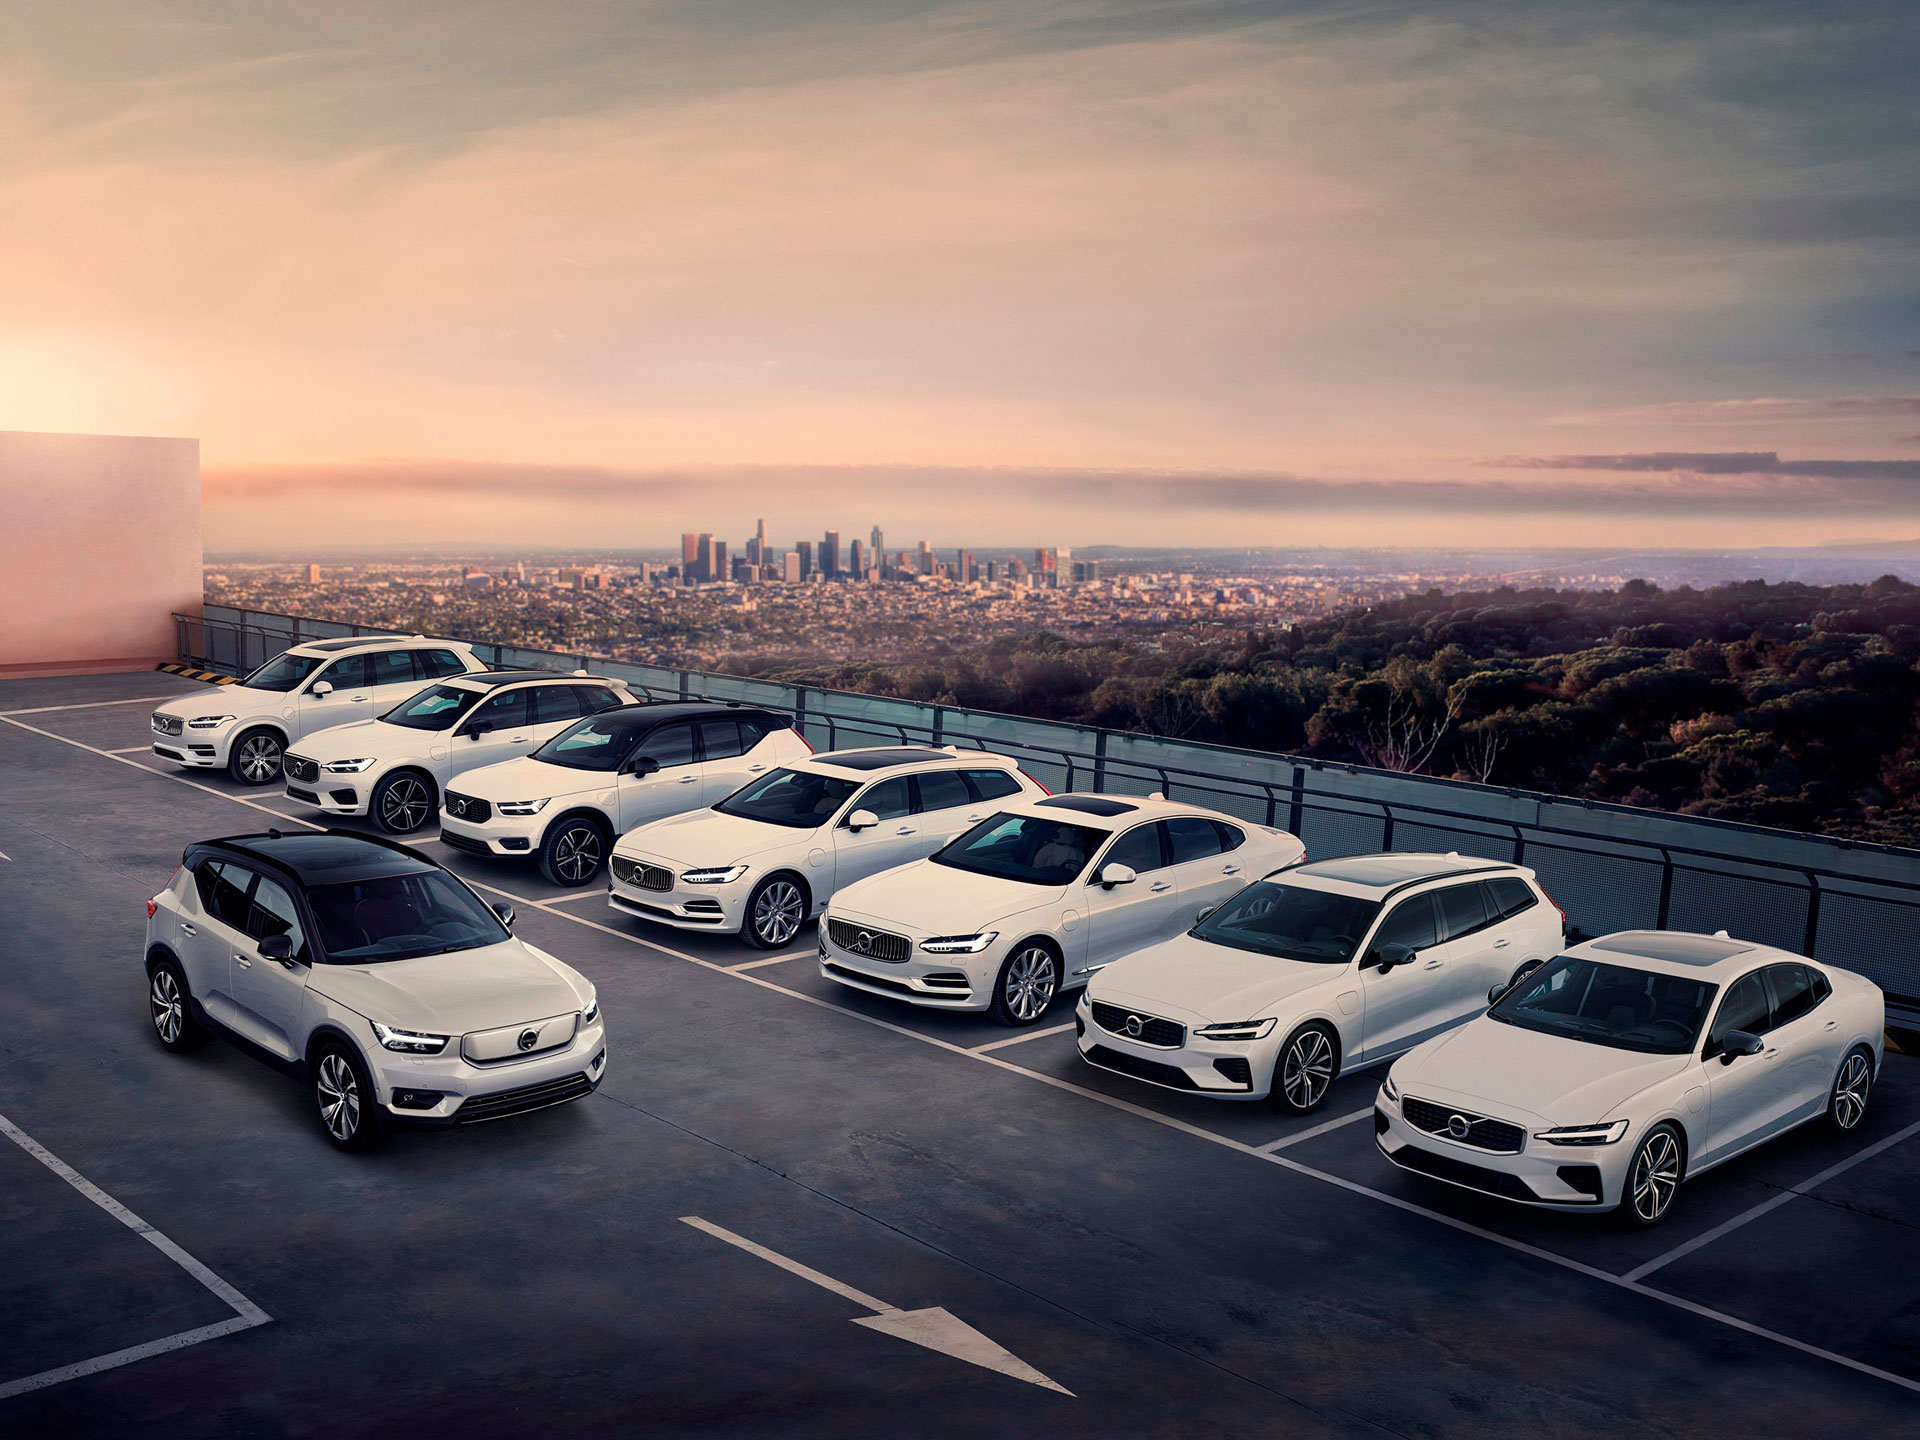 Gama completa de vehículos Volvo color blanco en un estacionamiento